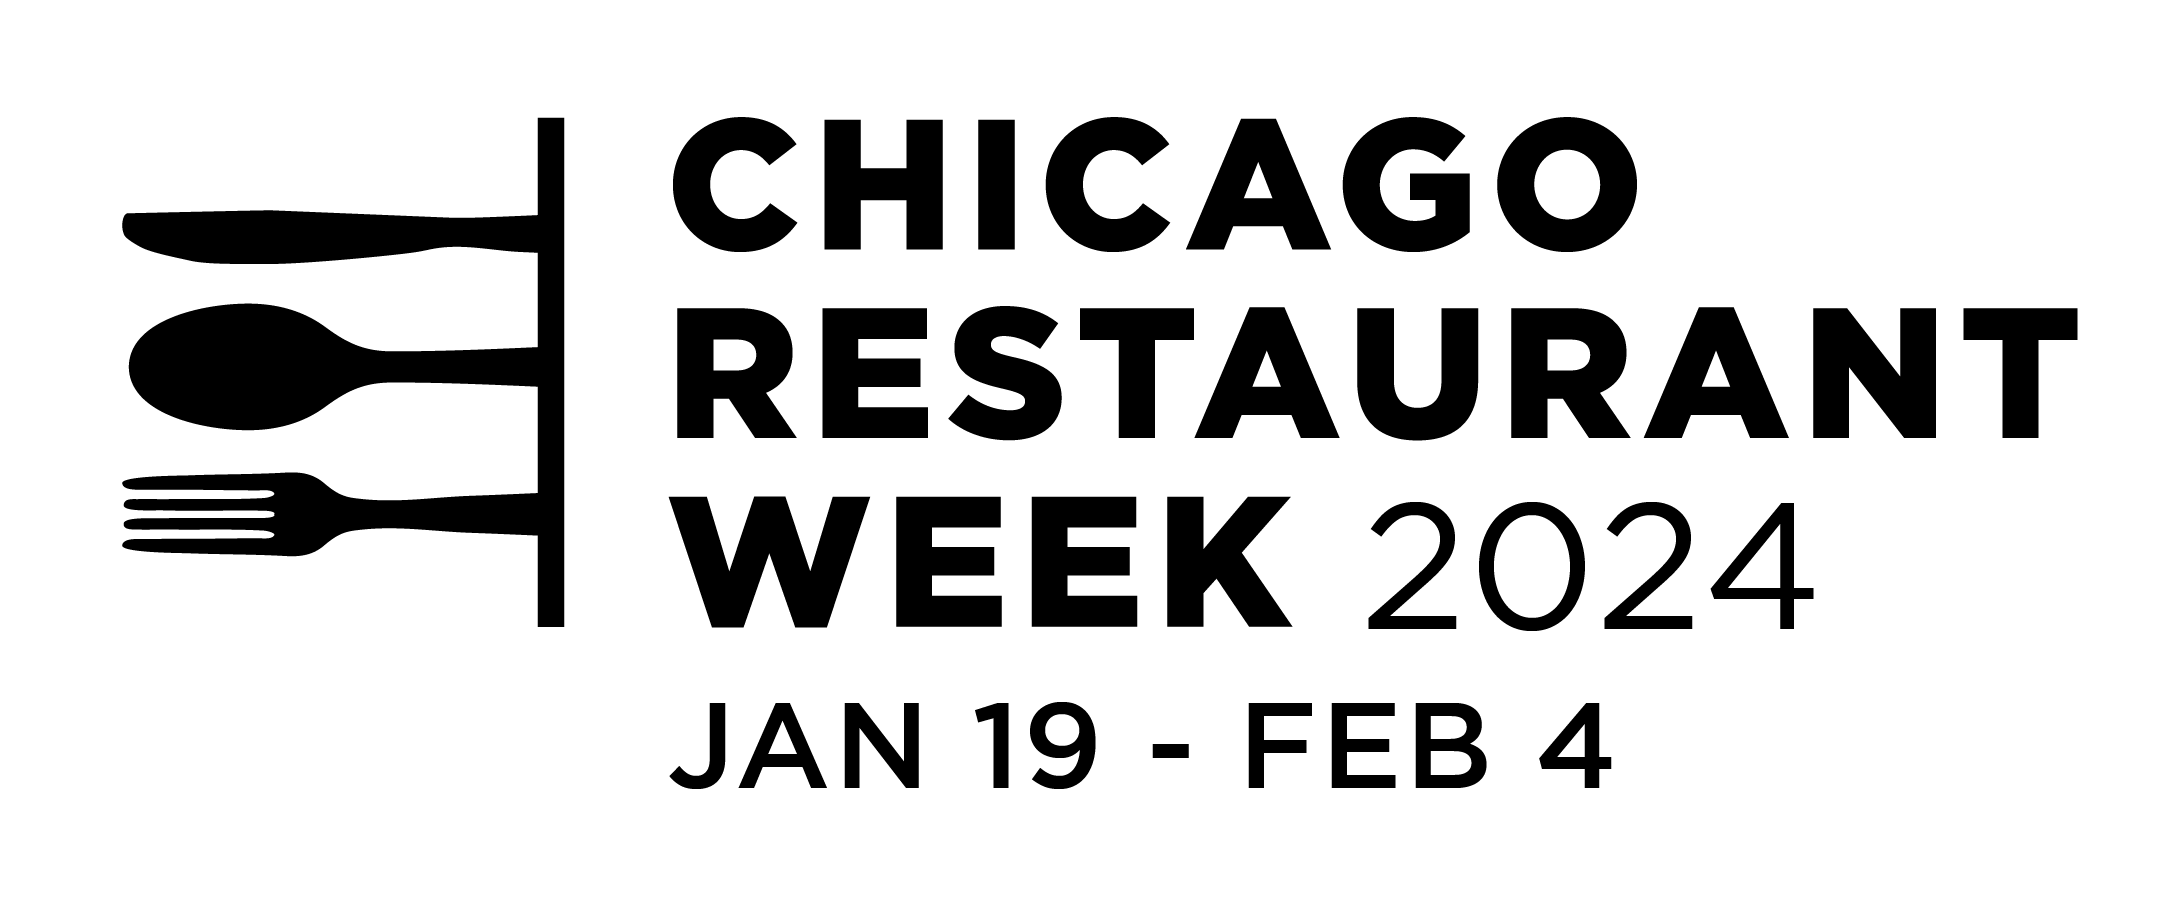 Chicago Restaurant Week '24